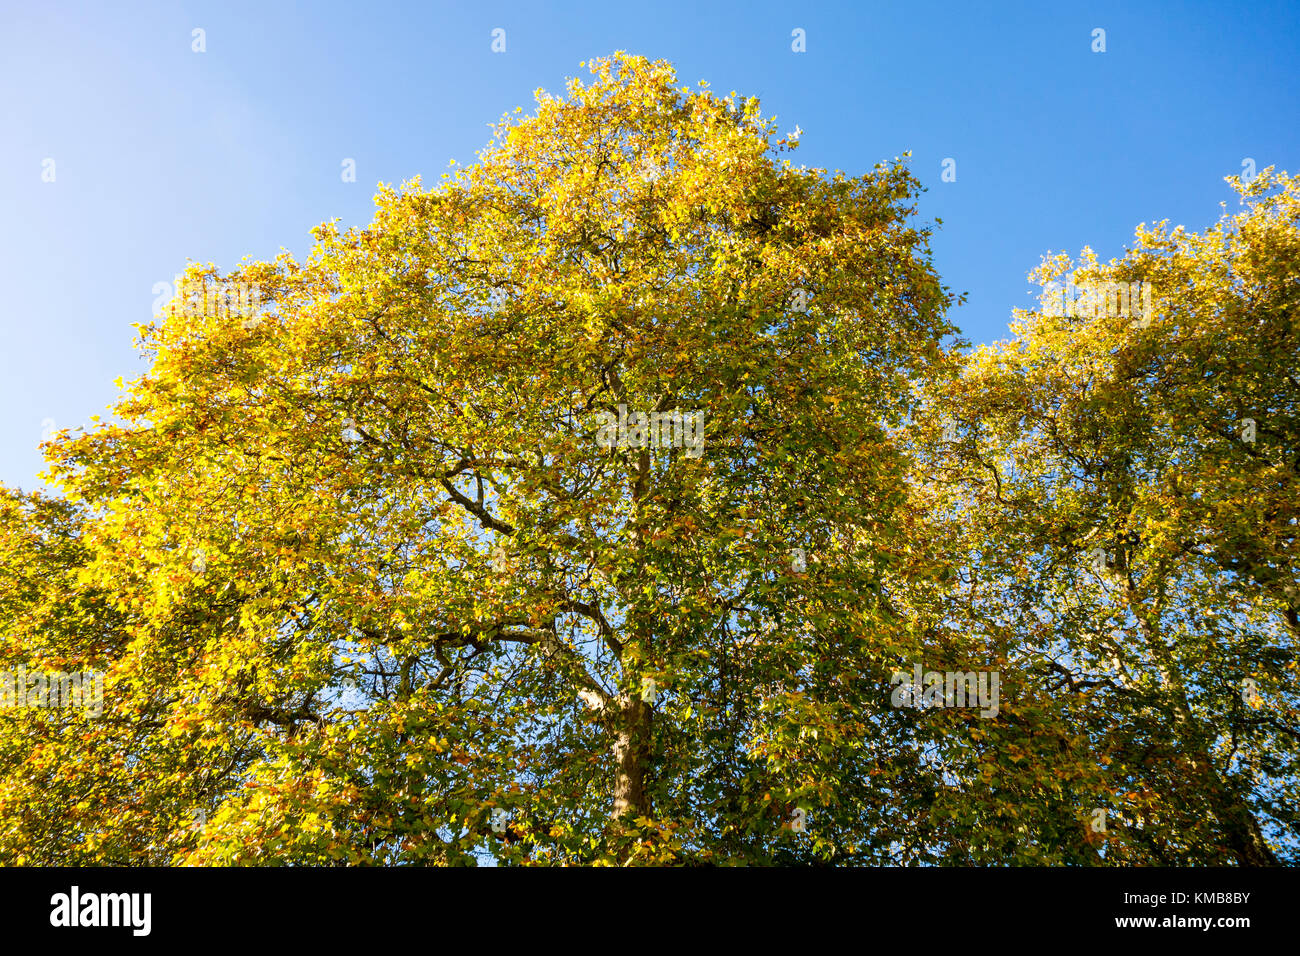 Inizio collezione autunno / autunno / autunnale di scena in Mecklenburgh Square con verdi alberi e foglie cadute. Bloomsbury, London, Regno Unito Foto Stock